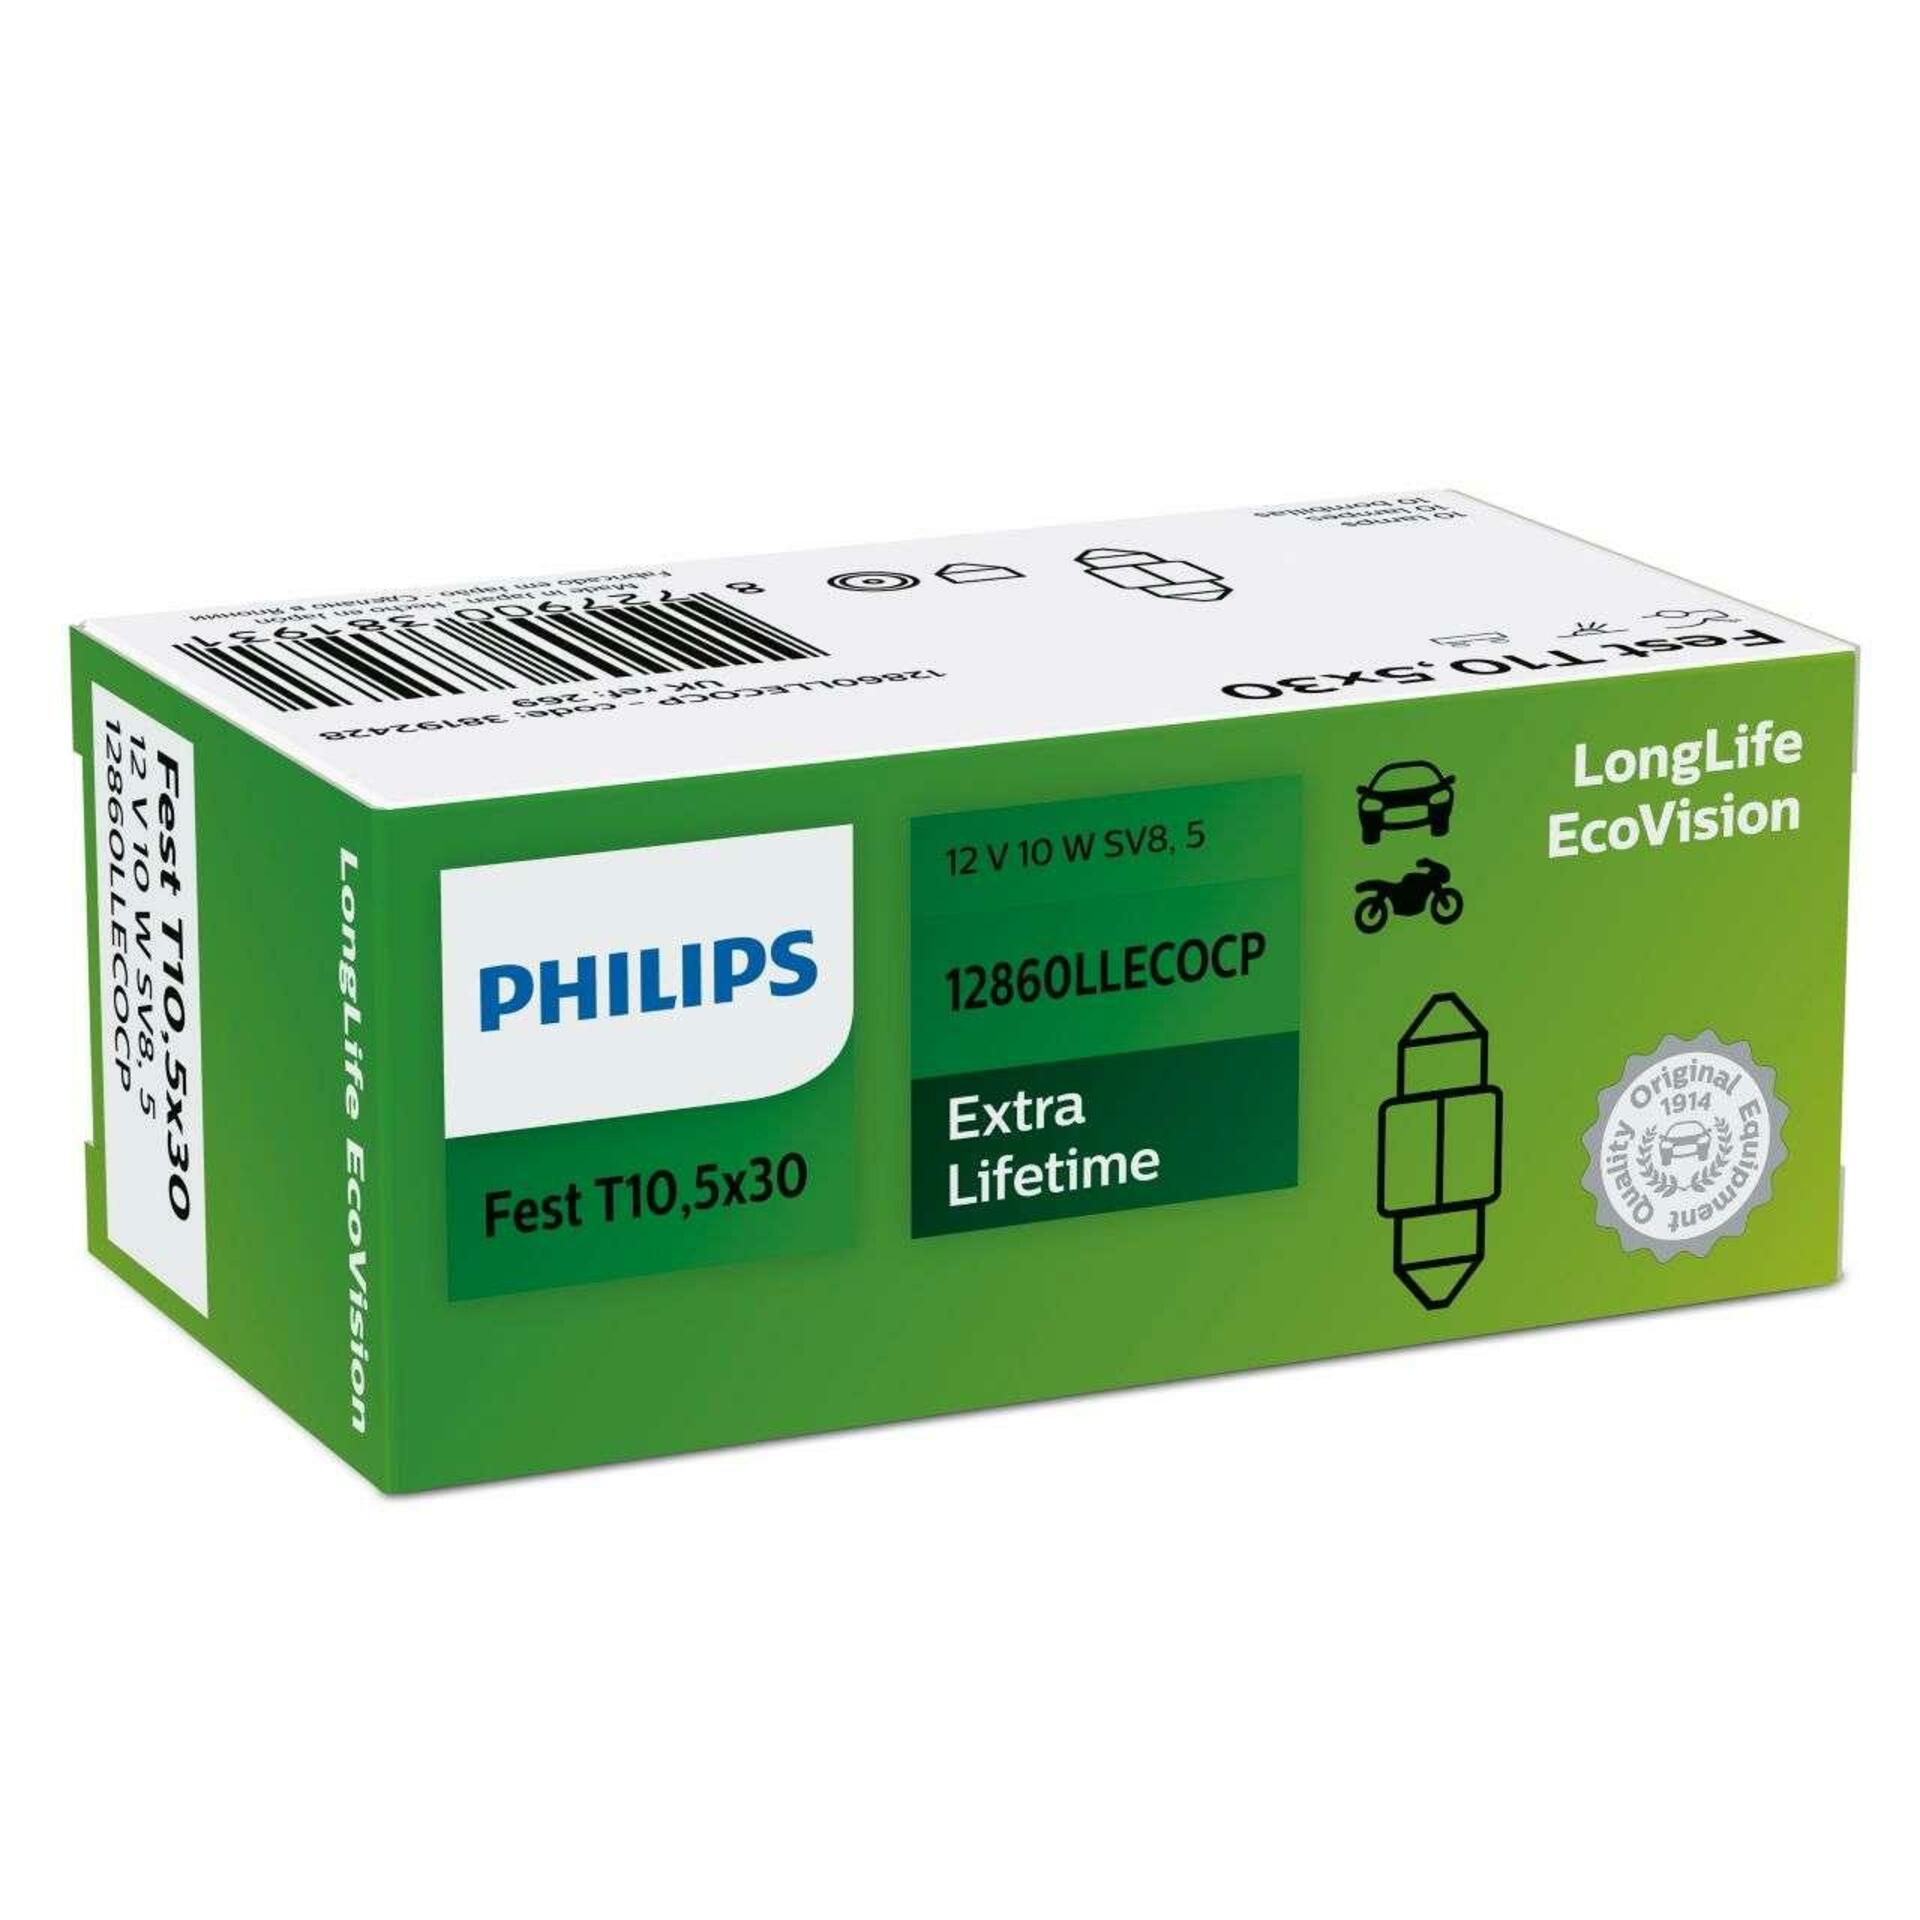 Philips T10.5x30 12V 10W 12860LL longerlife